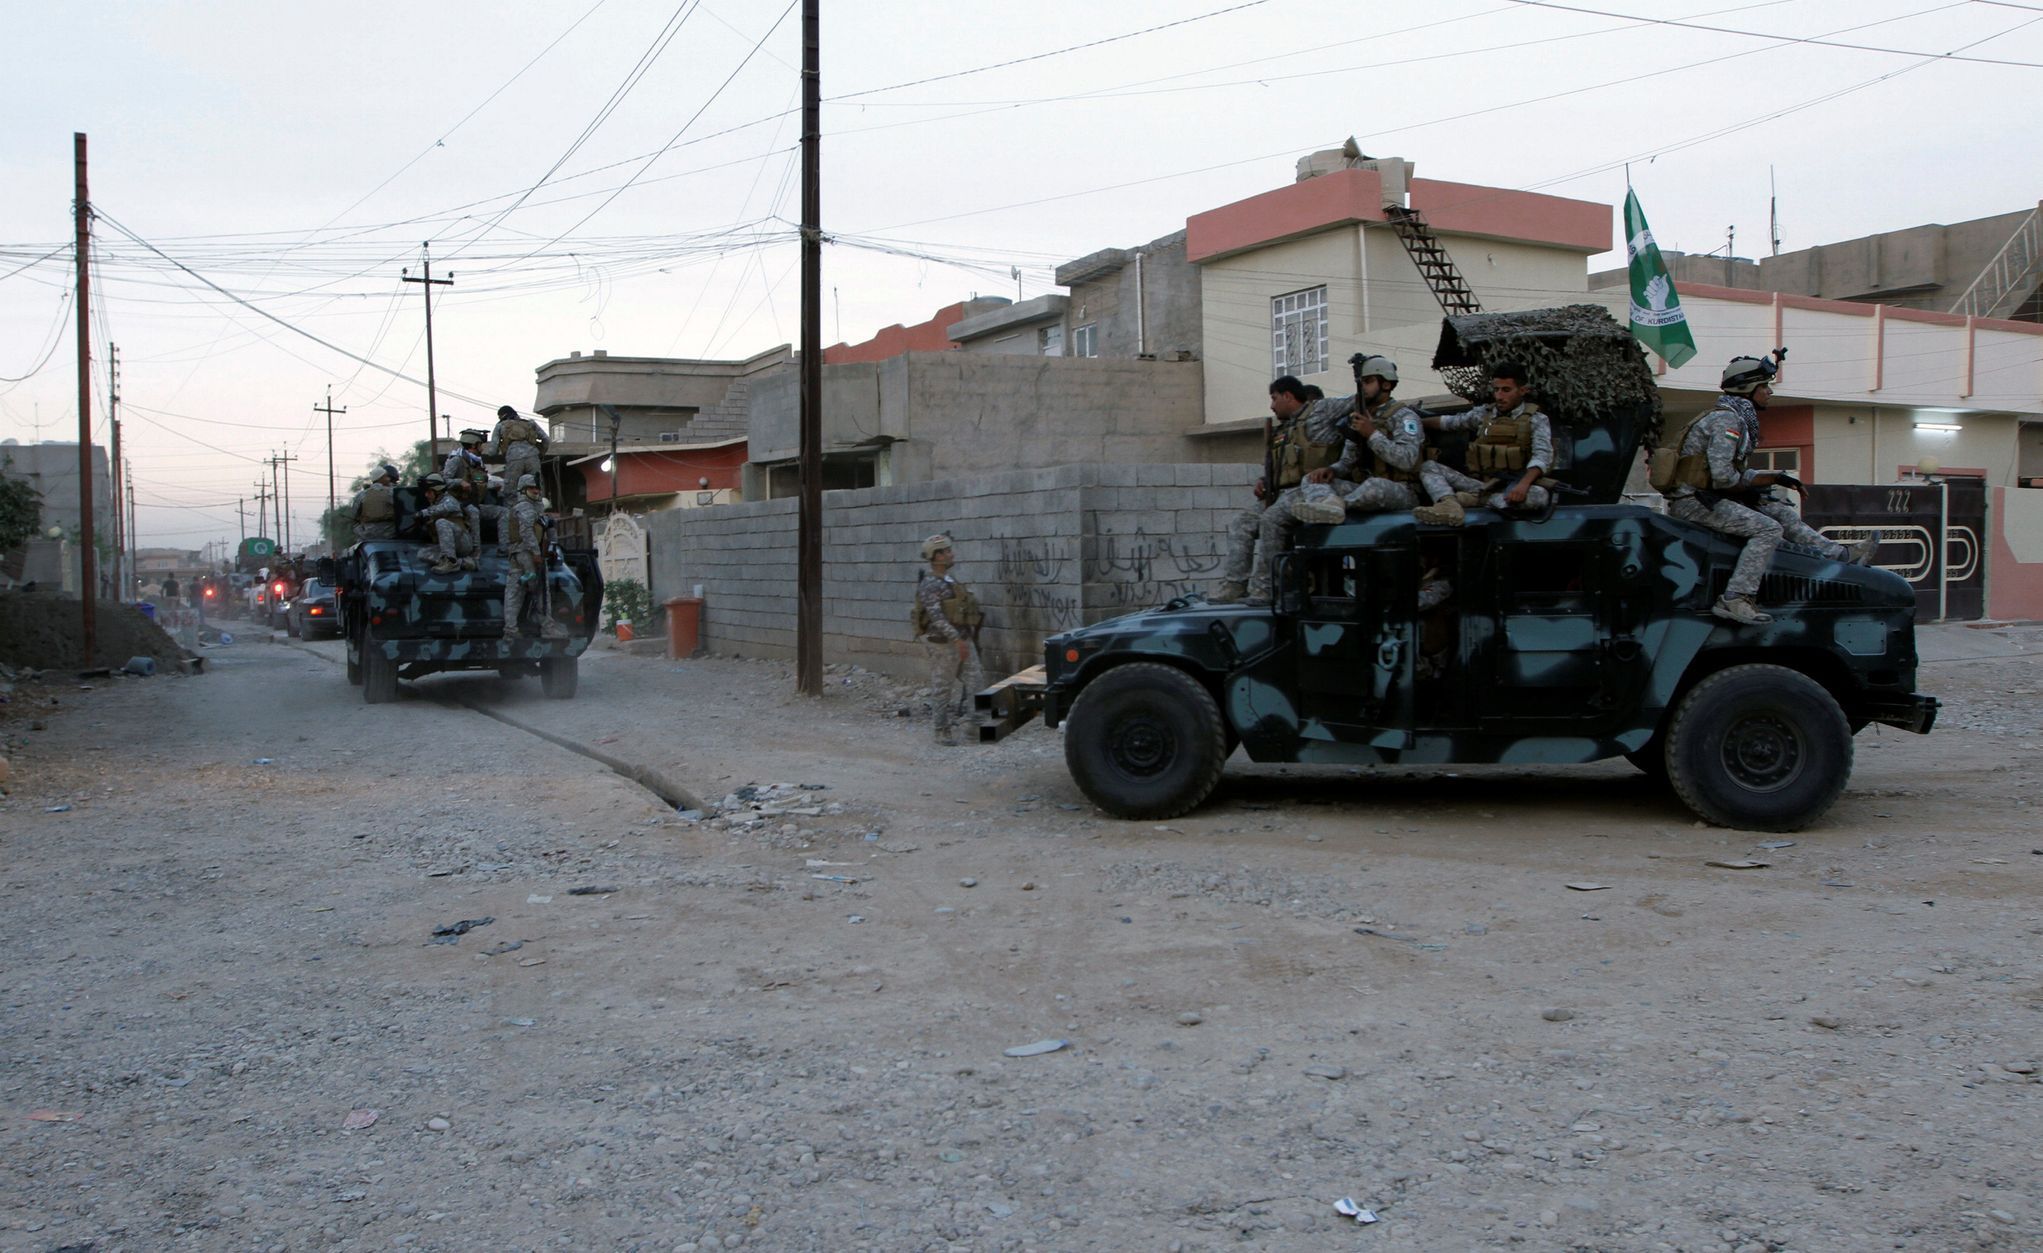 Irácké jednotky v Kirkúru